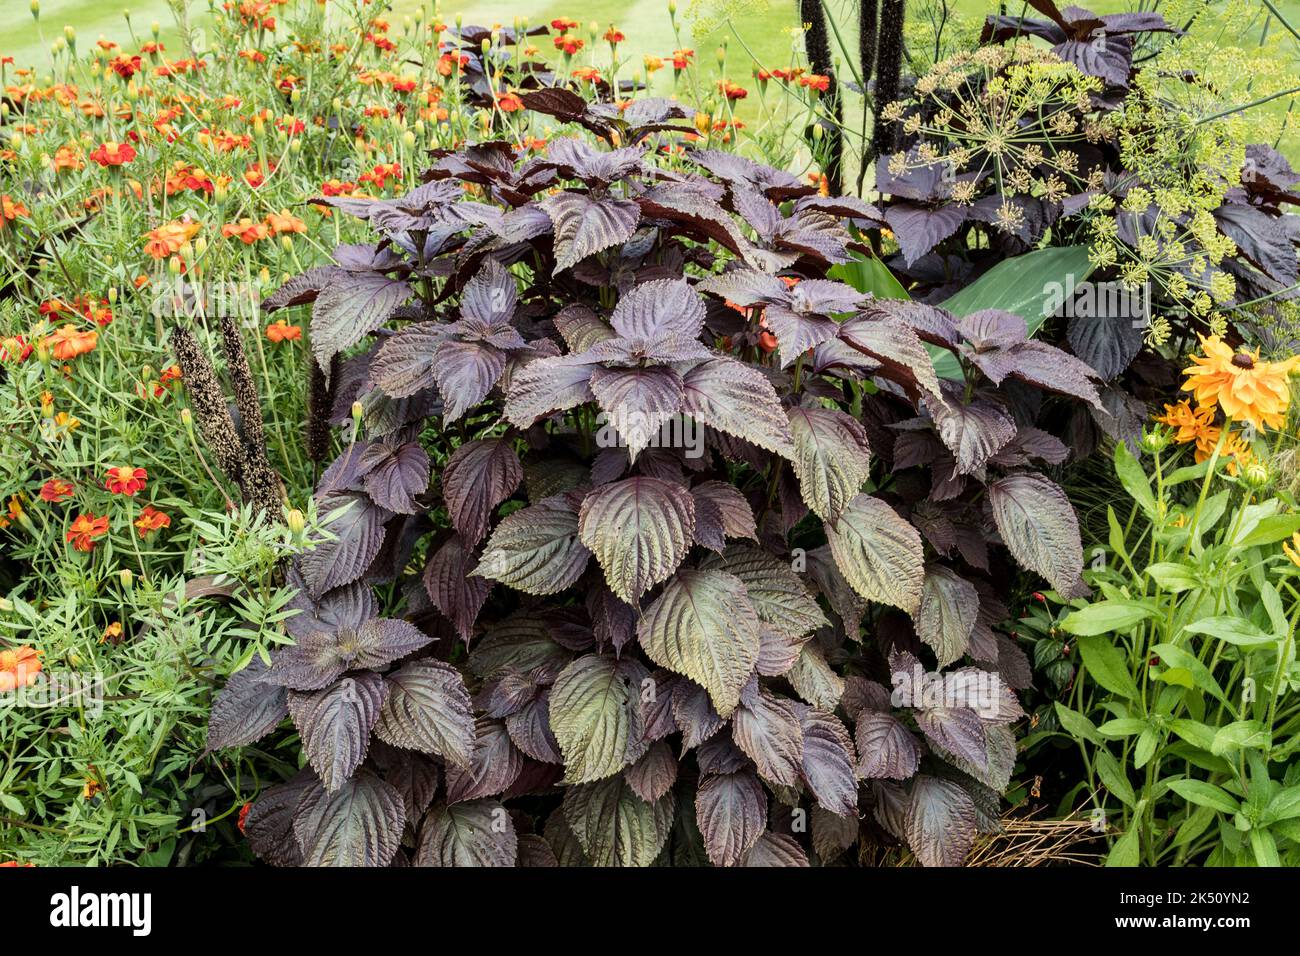 The annual plant Perilla frutescens Stock Photo